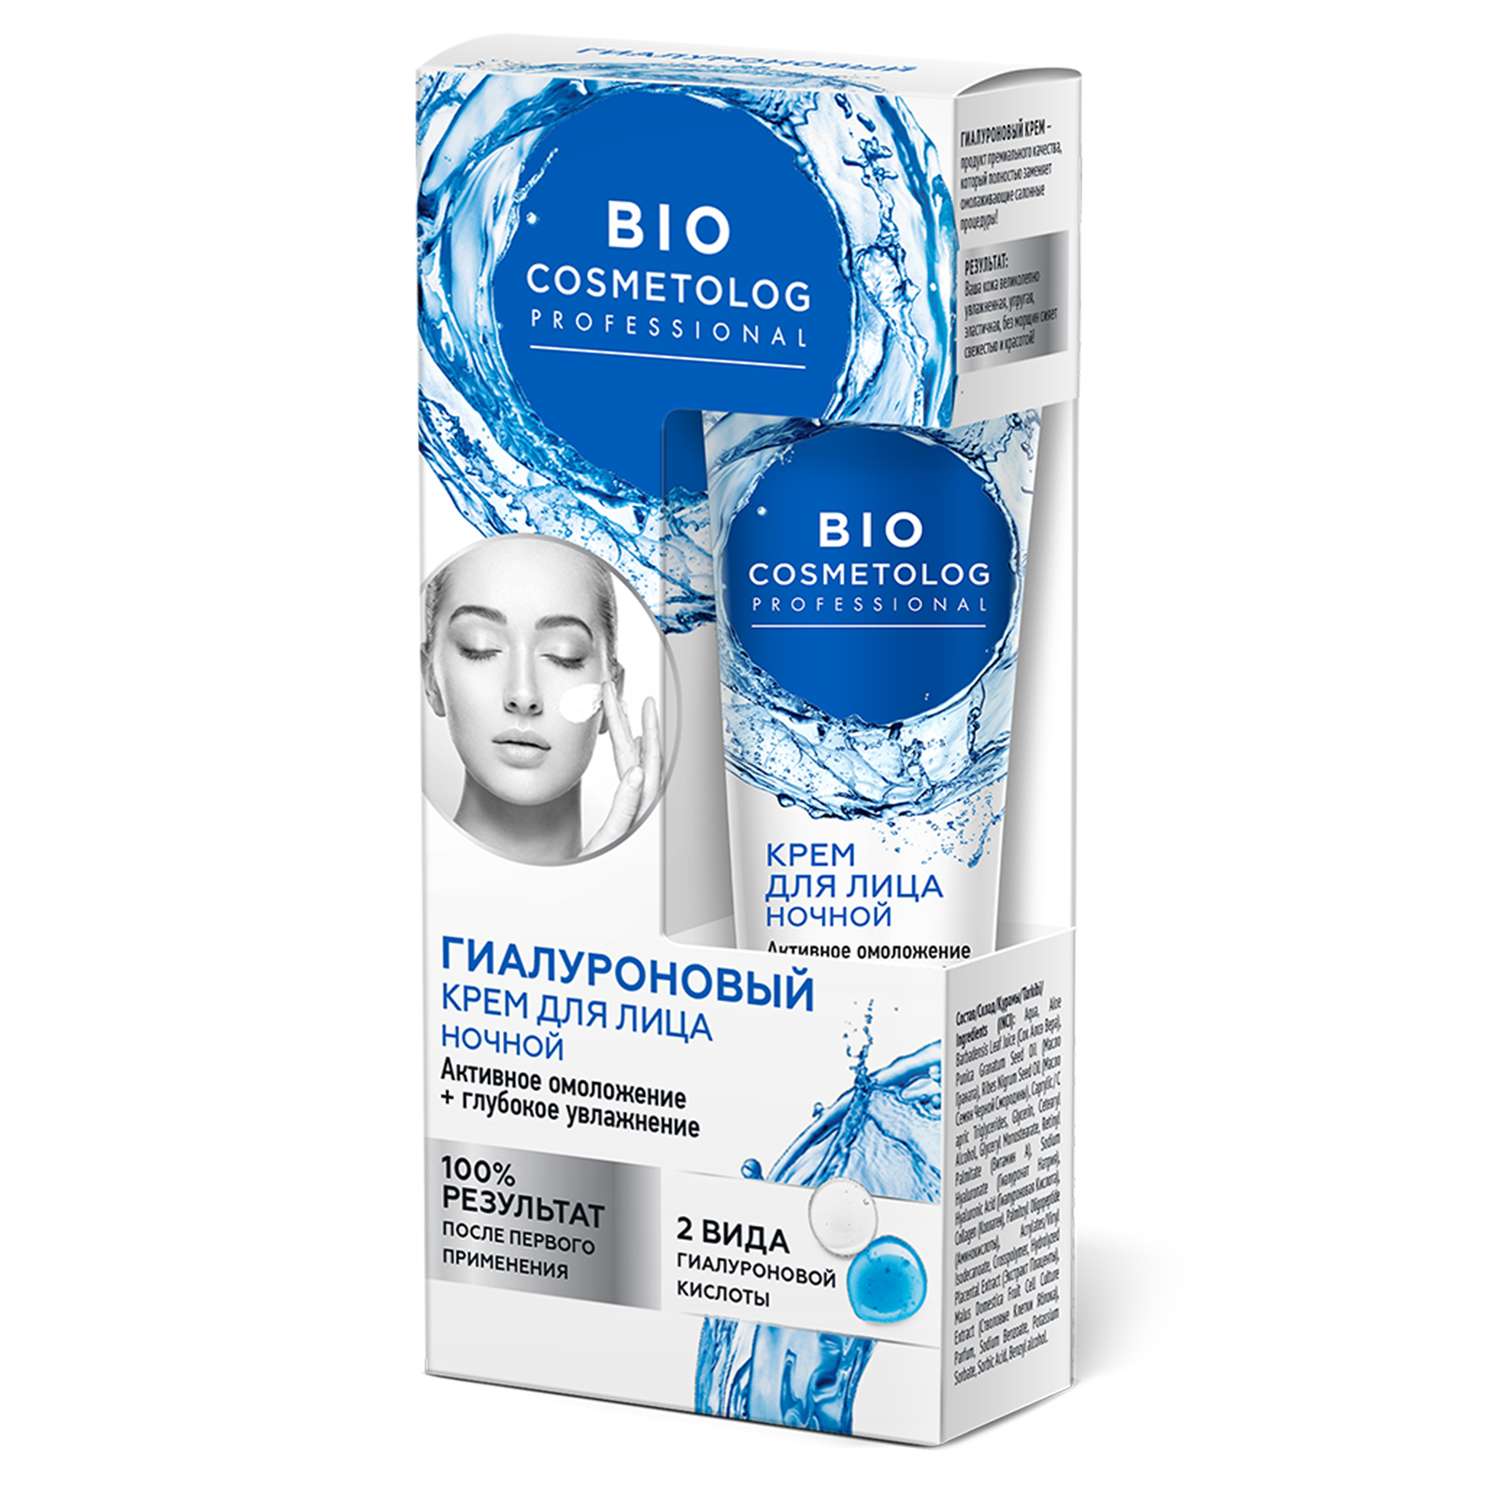 Крем для лица fito косметик Bio Cosmetolog Professional ночной гиалуроновый 45мл - фото 1